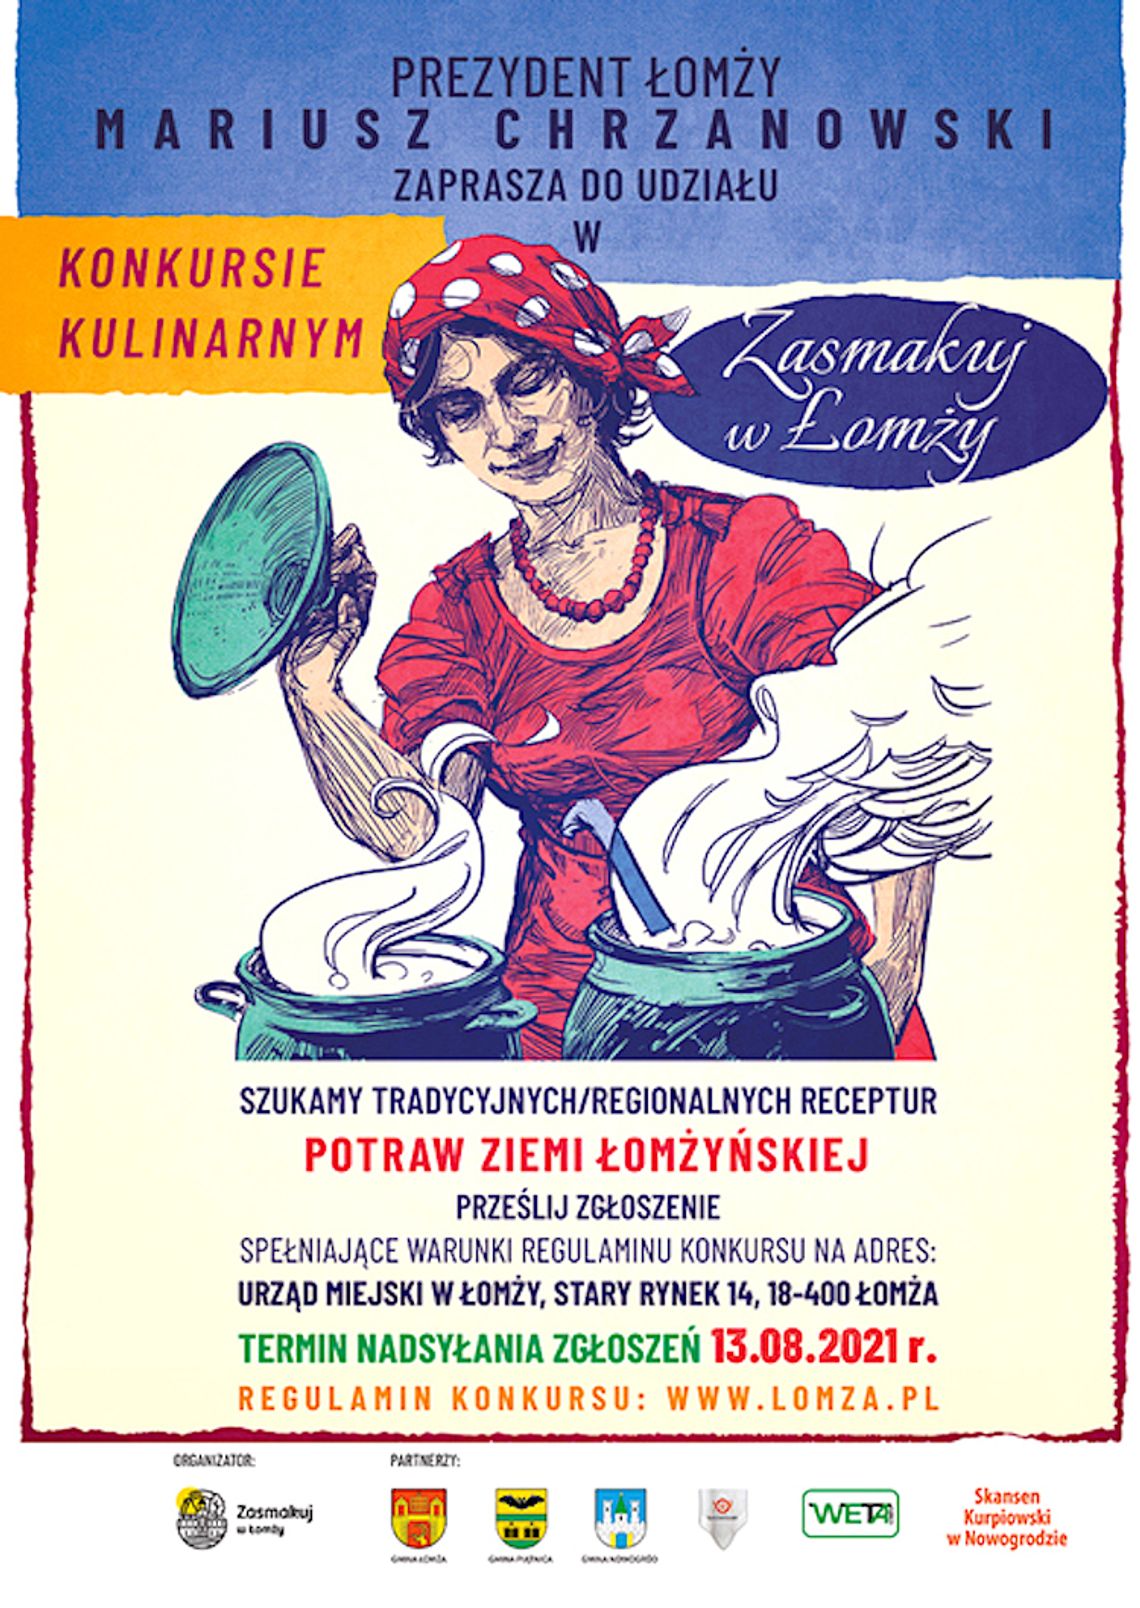  Konkurs kulinarny "Zasmakuj w Łomży"